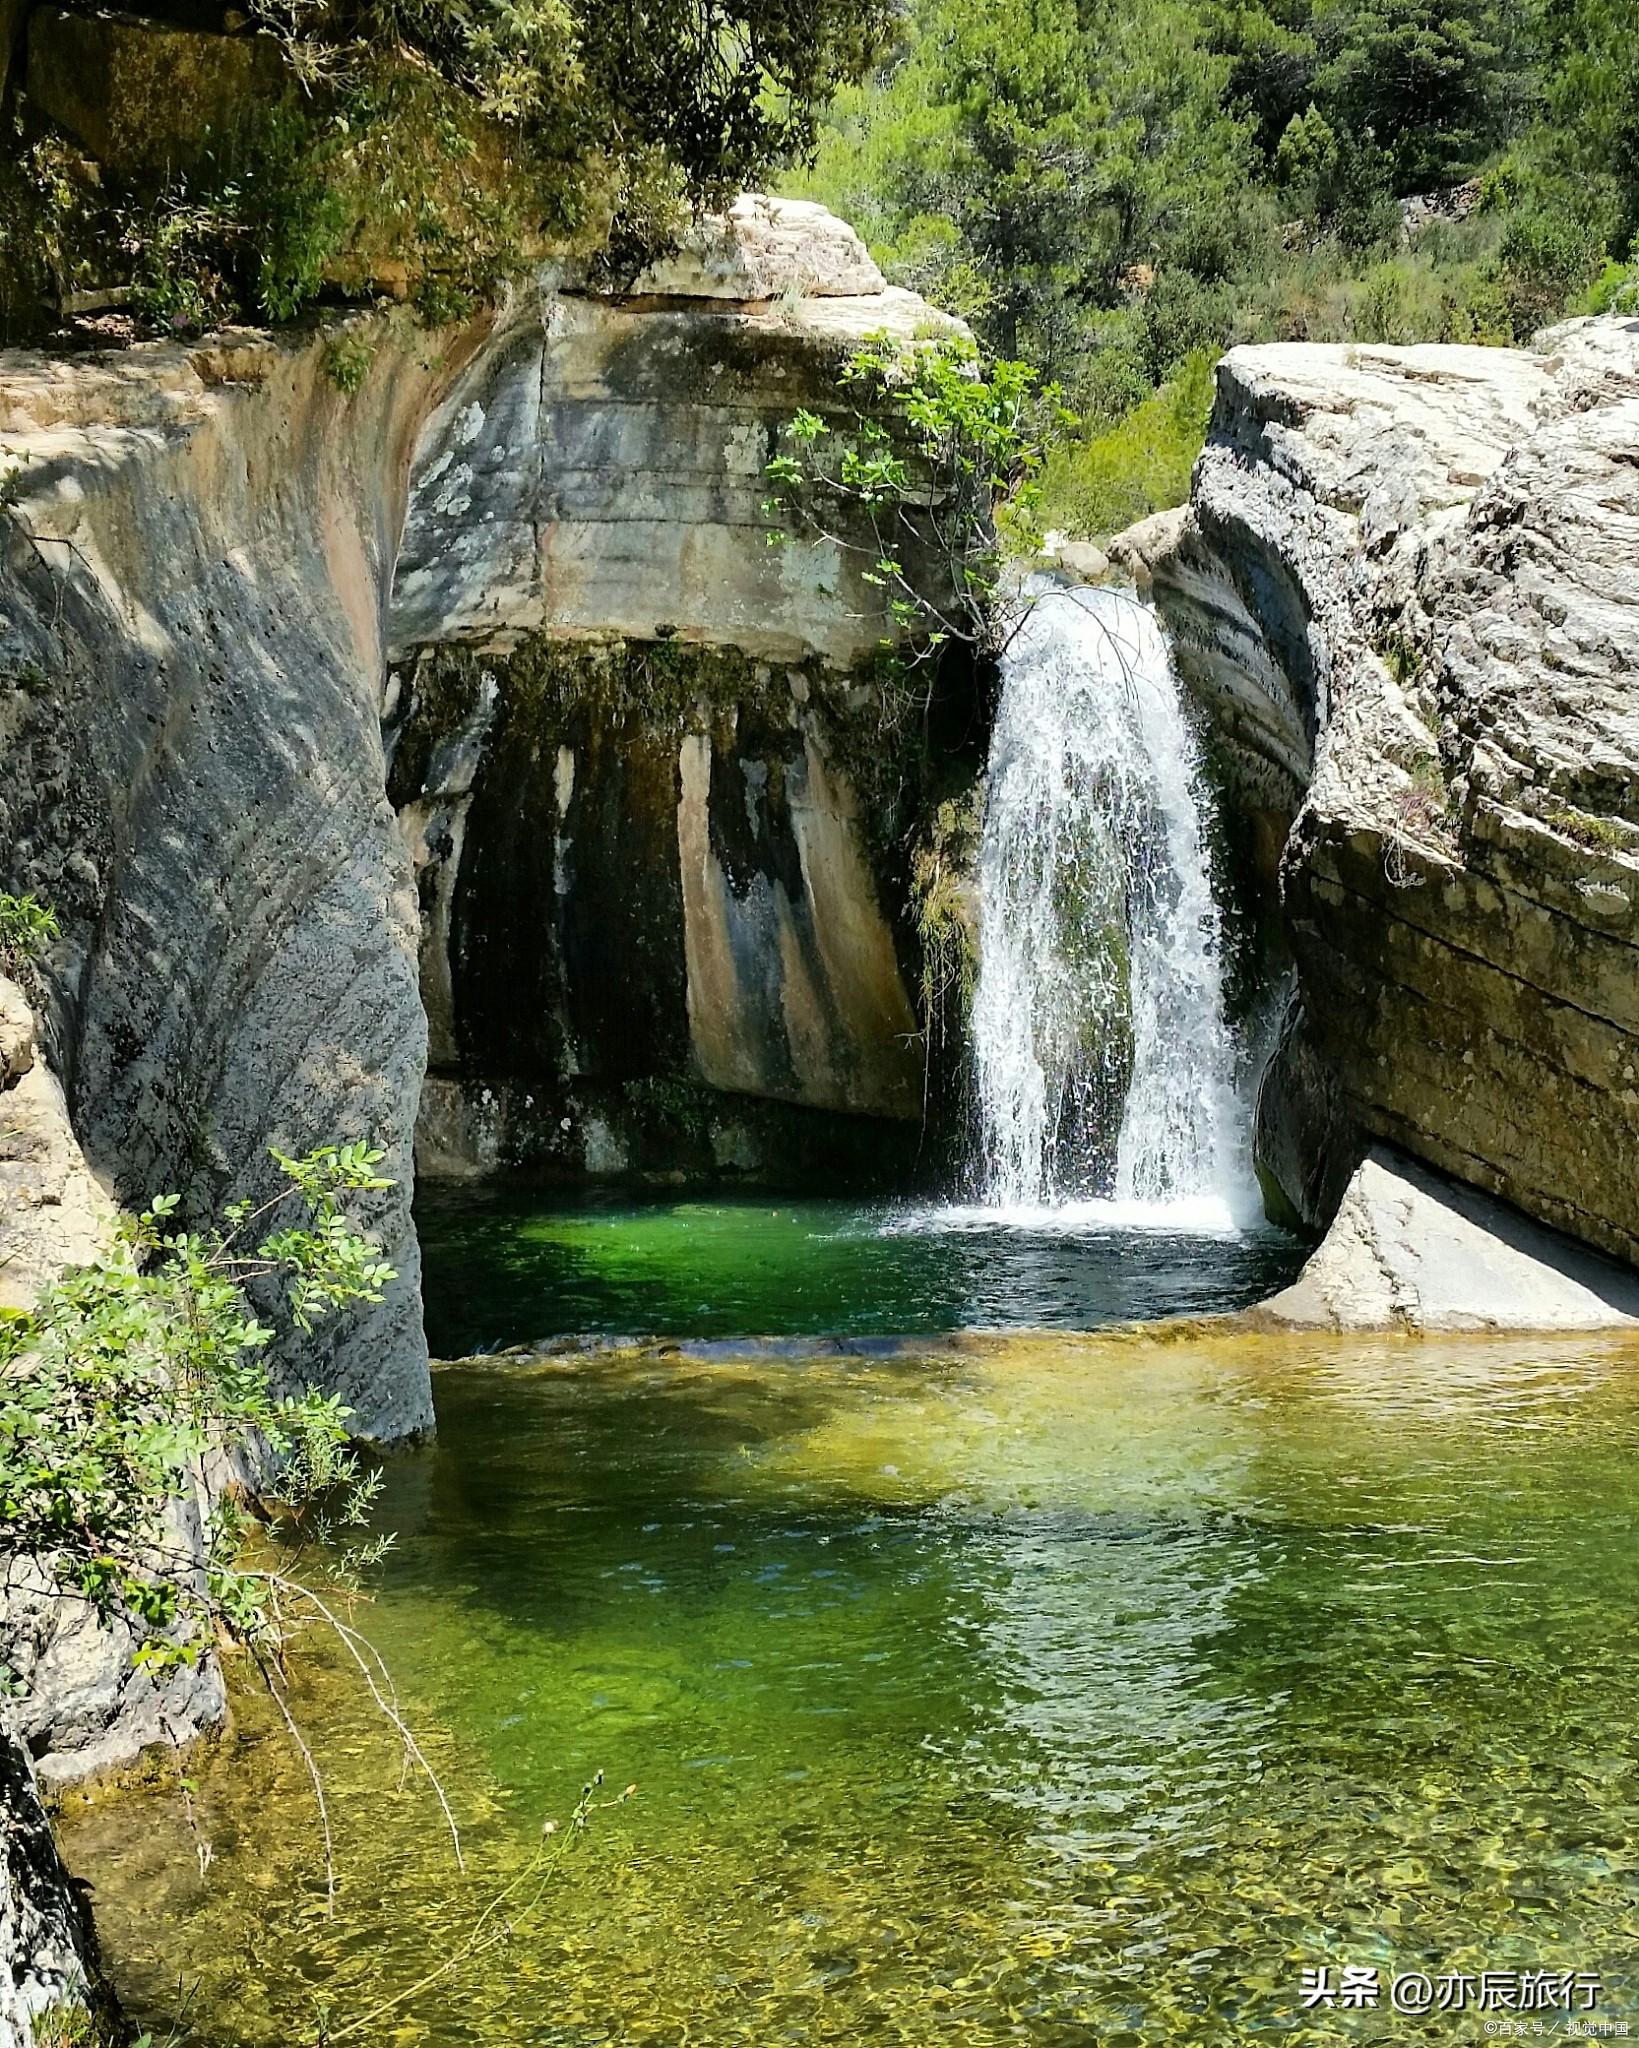 瀑布群位于淄川区峨庄乡自然保护区,是一个以瀑布为主题的旅游景点